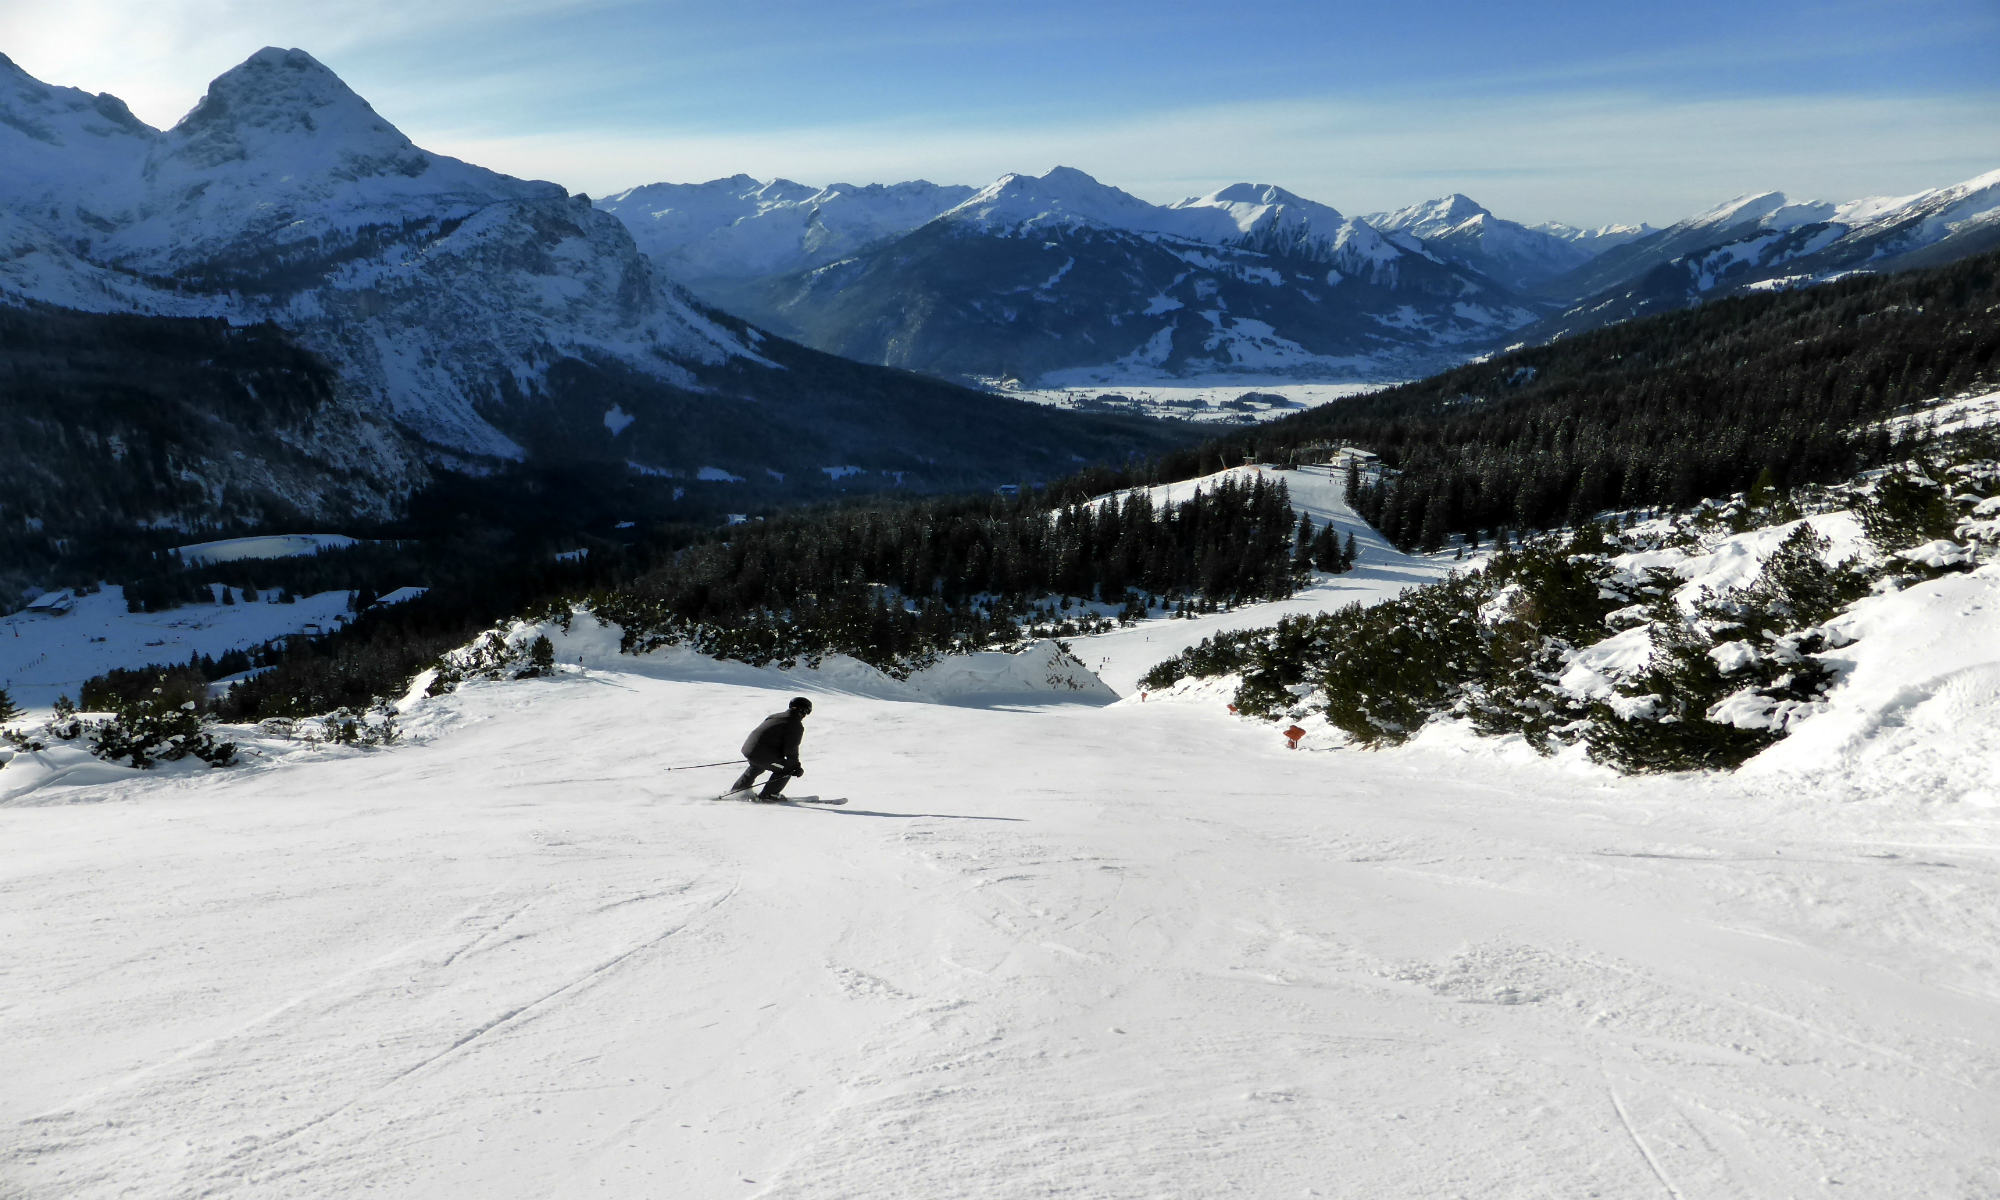 Prachtig uitzicht op het skigebied Alm, 1 persoon die naar beneden skiet.